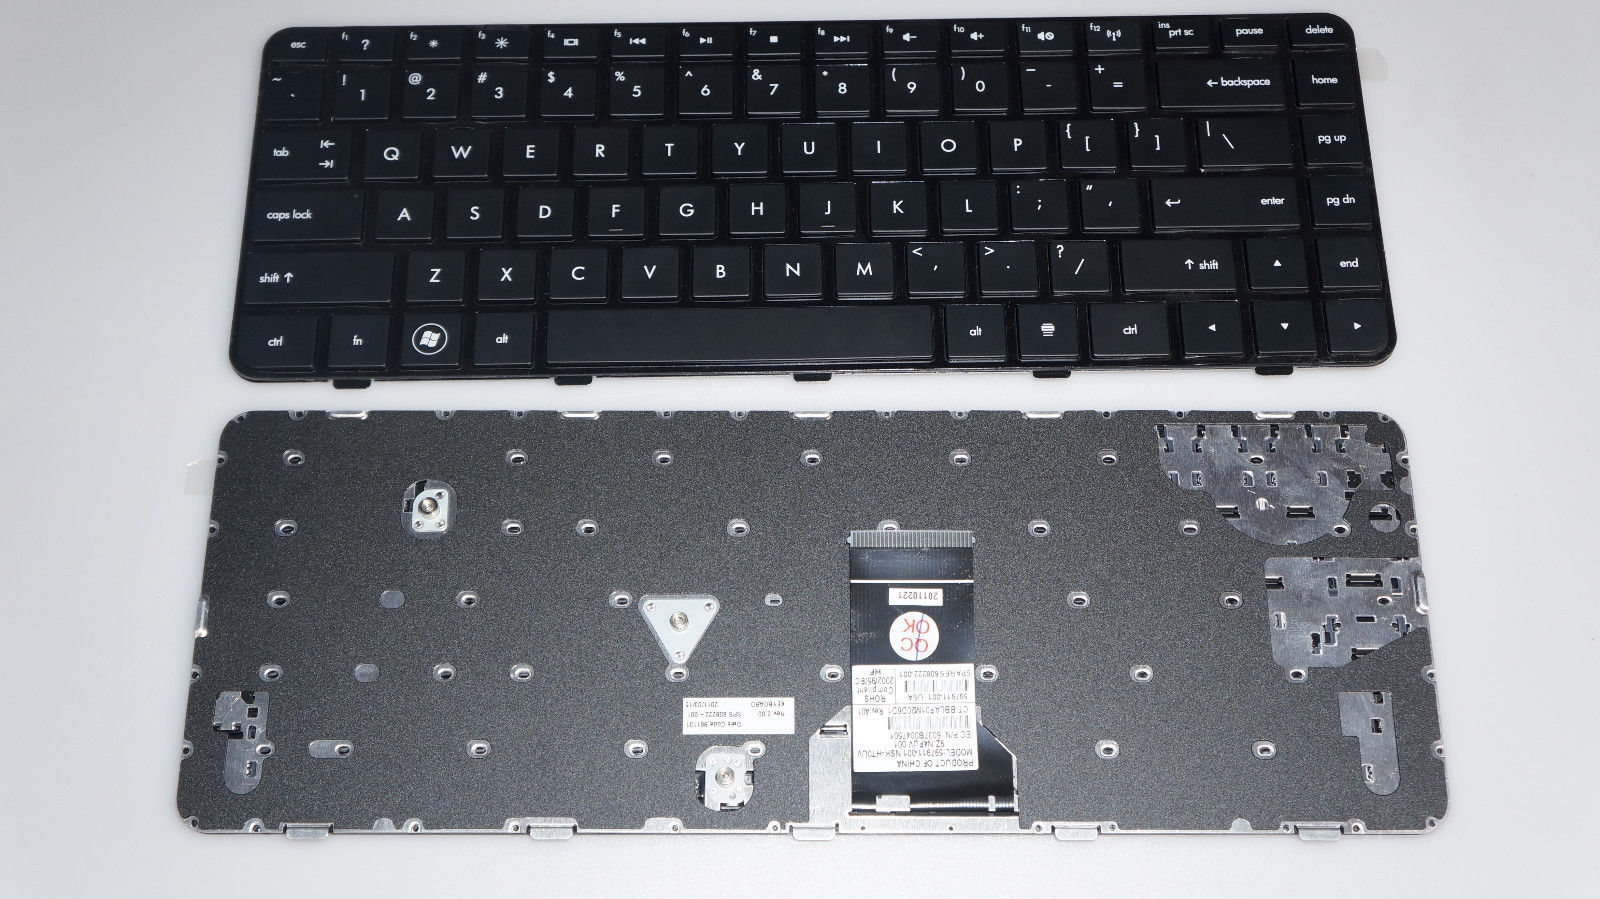 Bàn Phím - Keyboard Laptop HP Pavilion DM4 DM4-1001tu DM4-1001tx DM4-1002tu DM4-1003